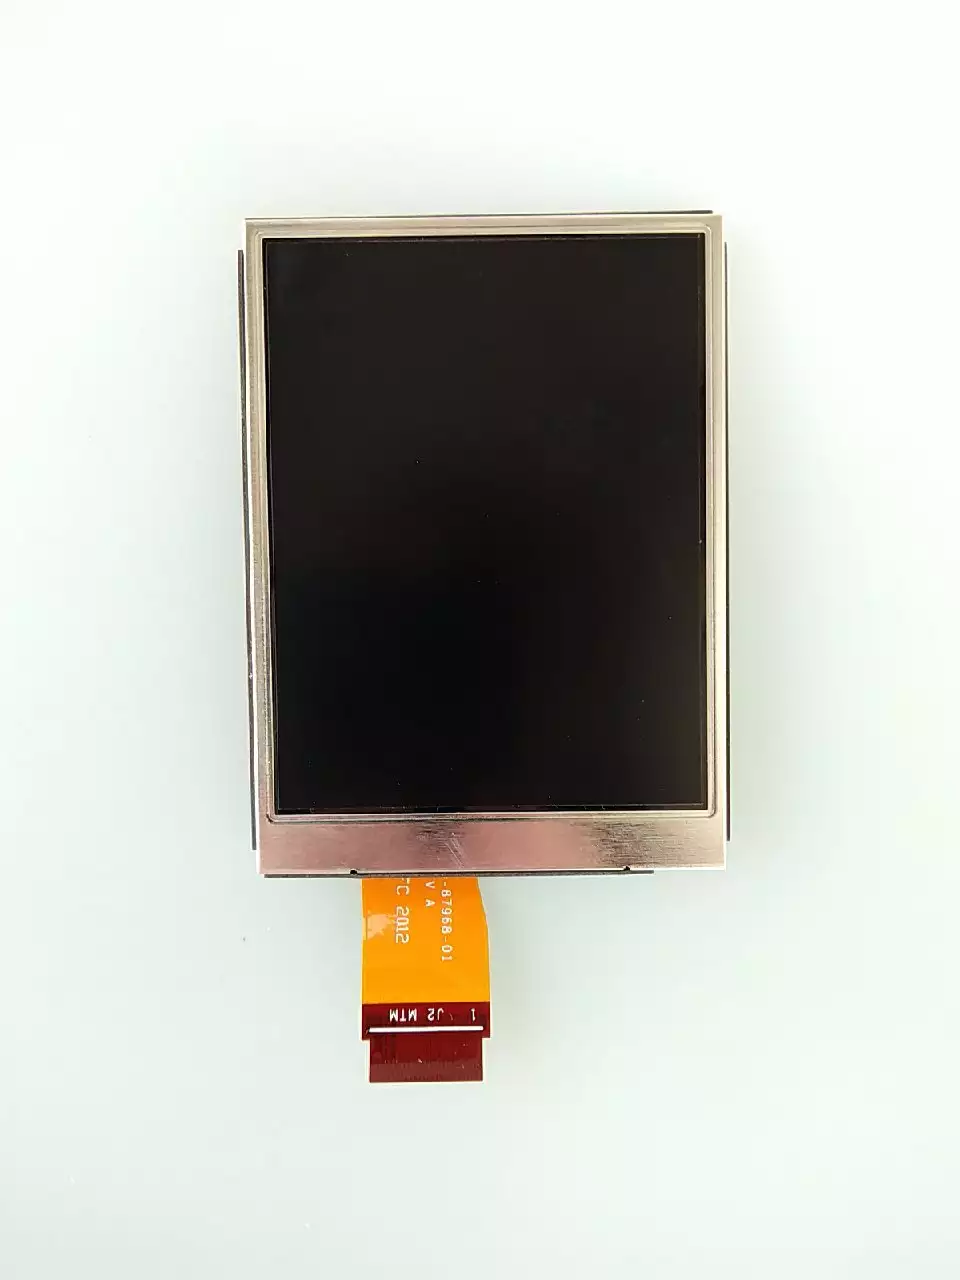 Изображения Дисплей LCD экран для mс9090